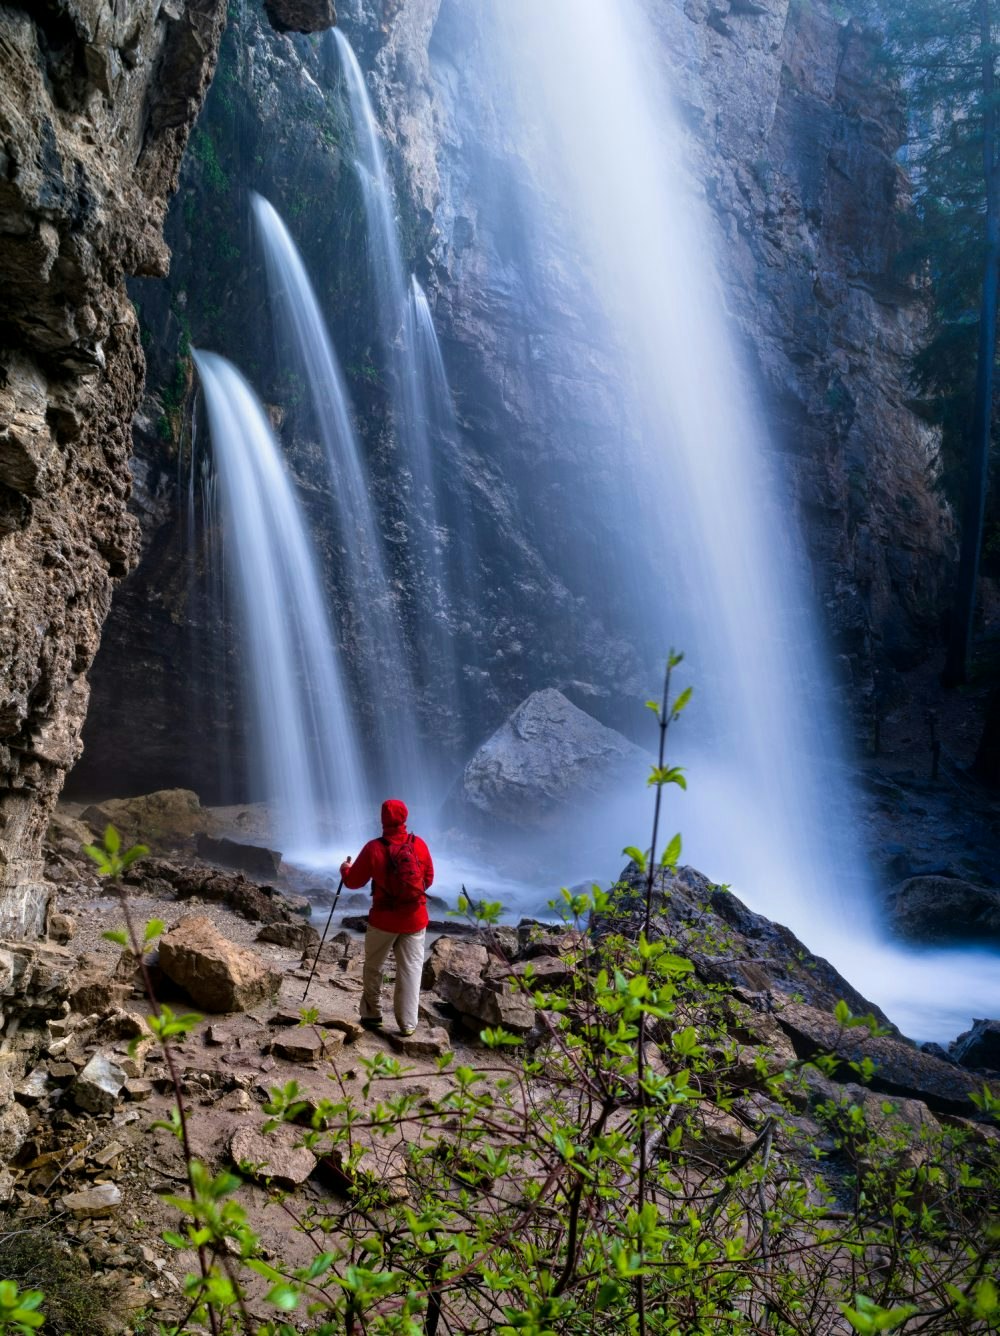 Travel News - Hiking Below Waterfall Hiker in Red